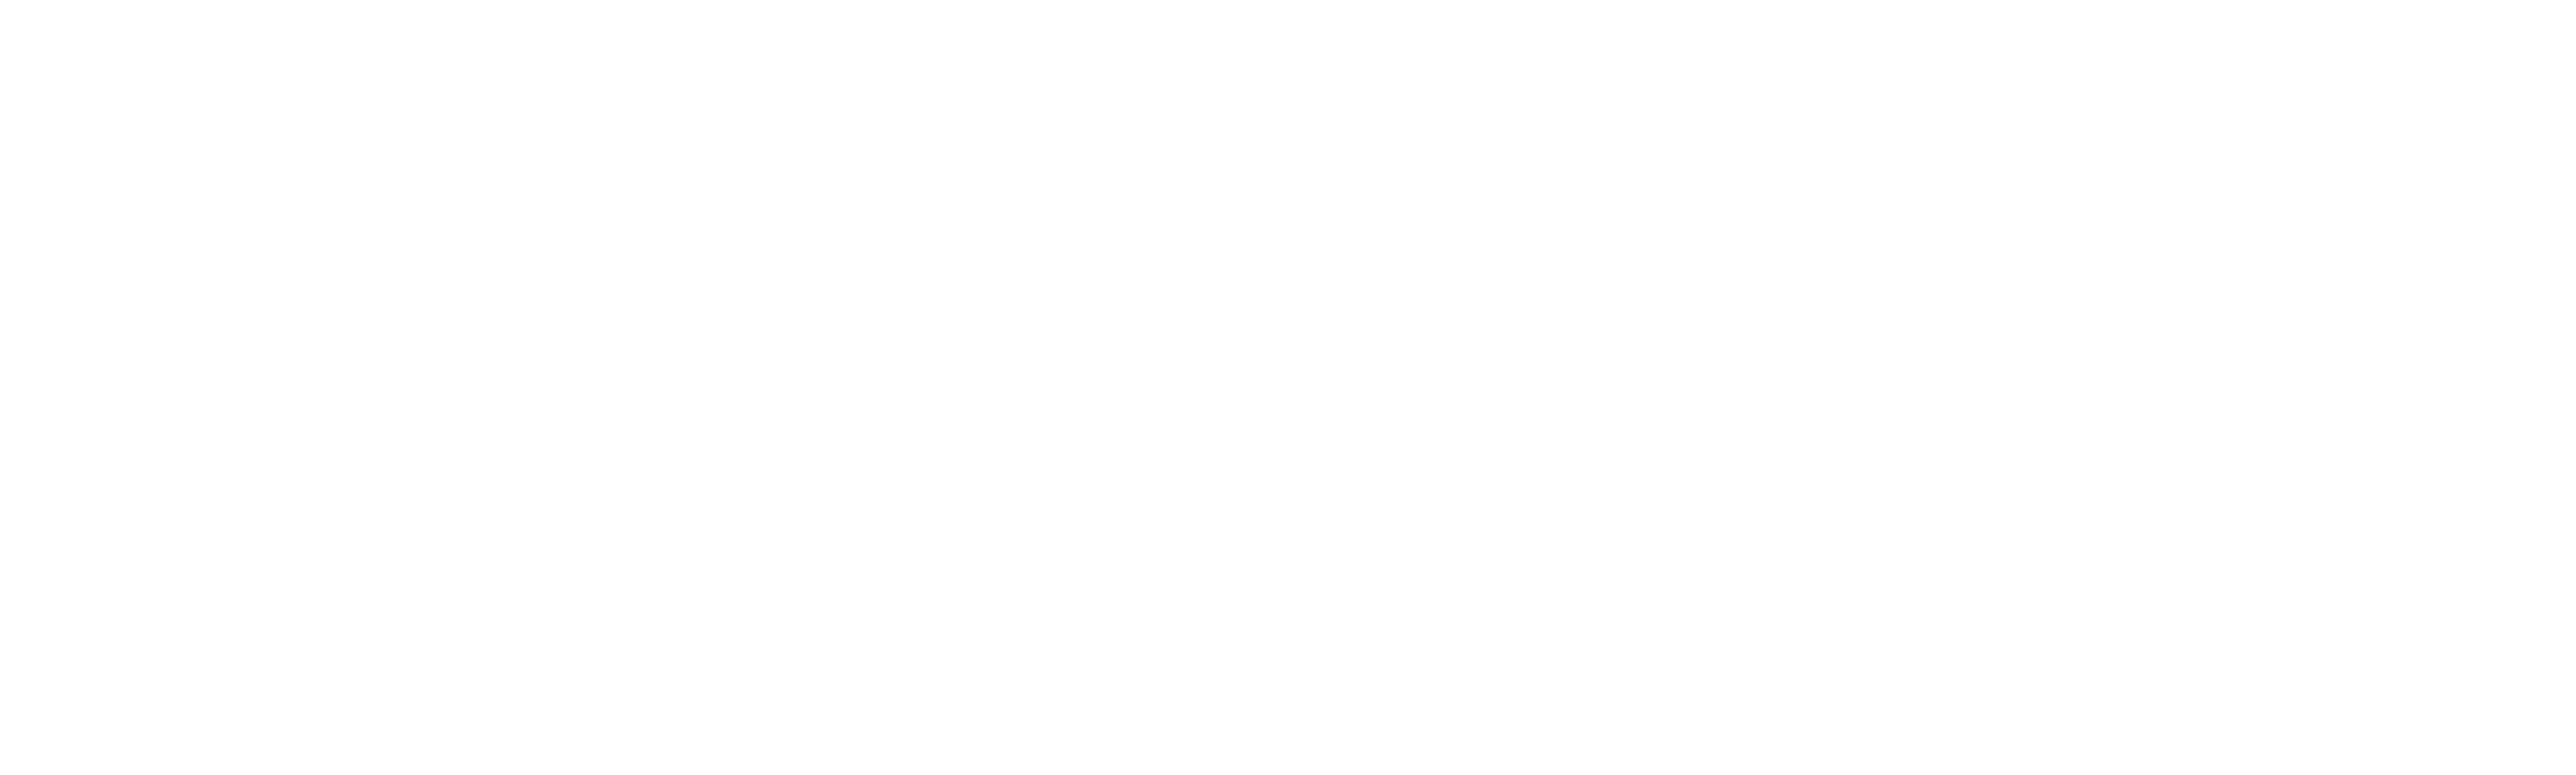 Steven universe FUTURE analisando a ABERTURA da ULTIMA TEMPORADA